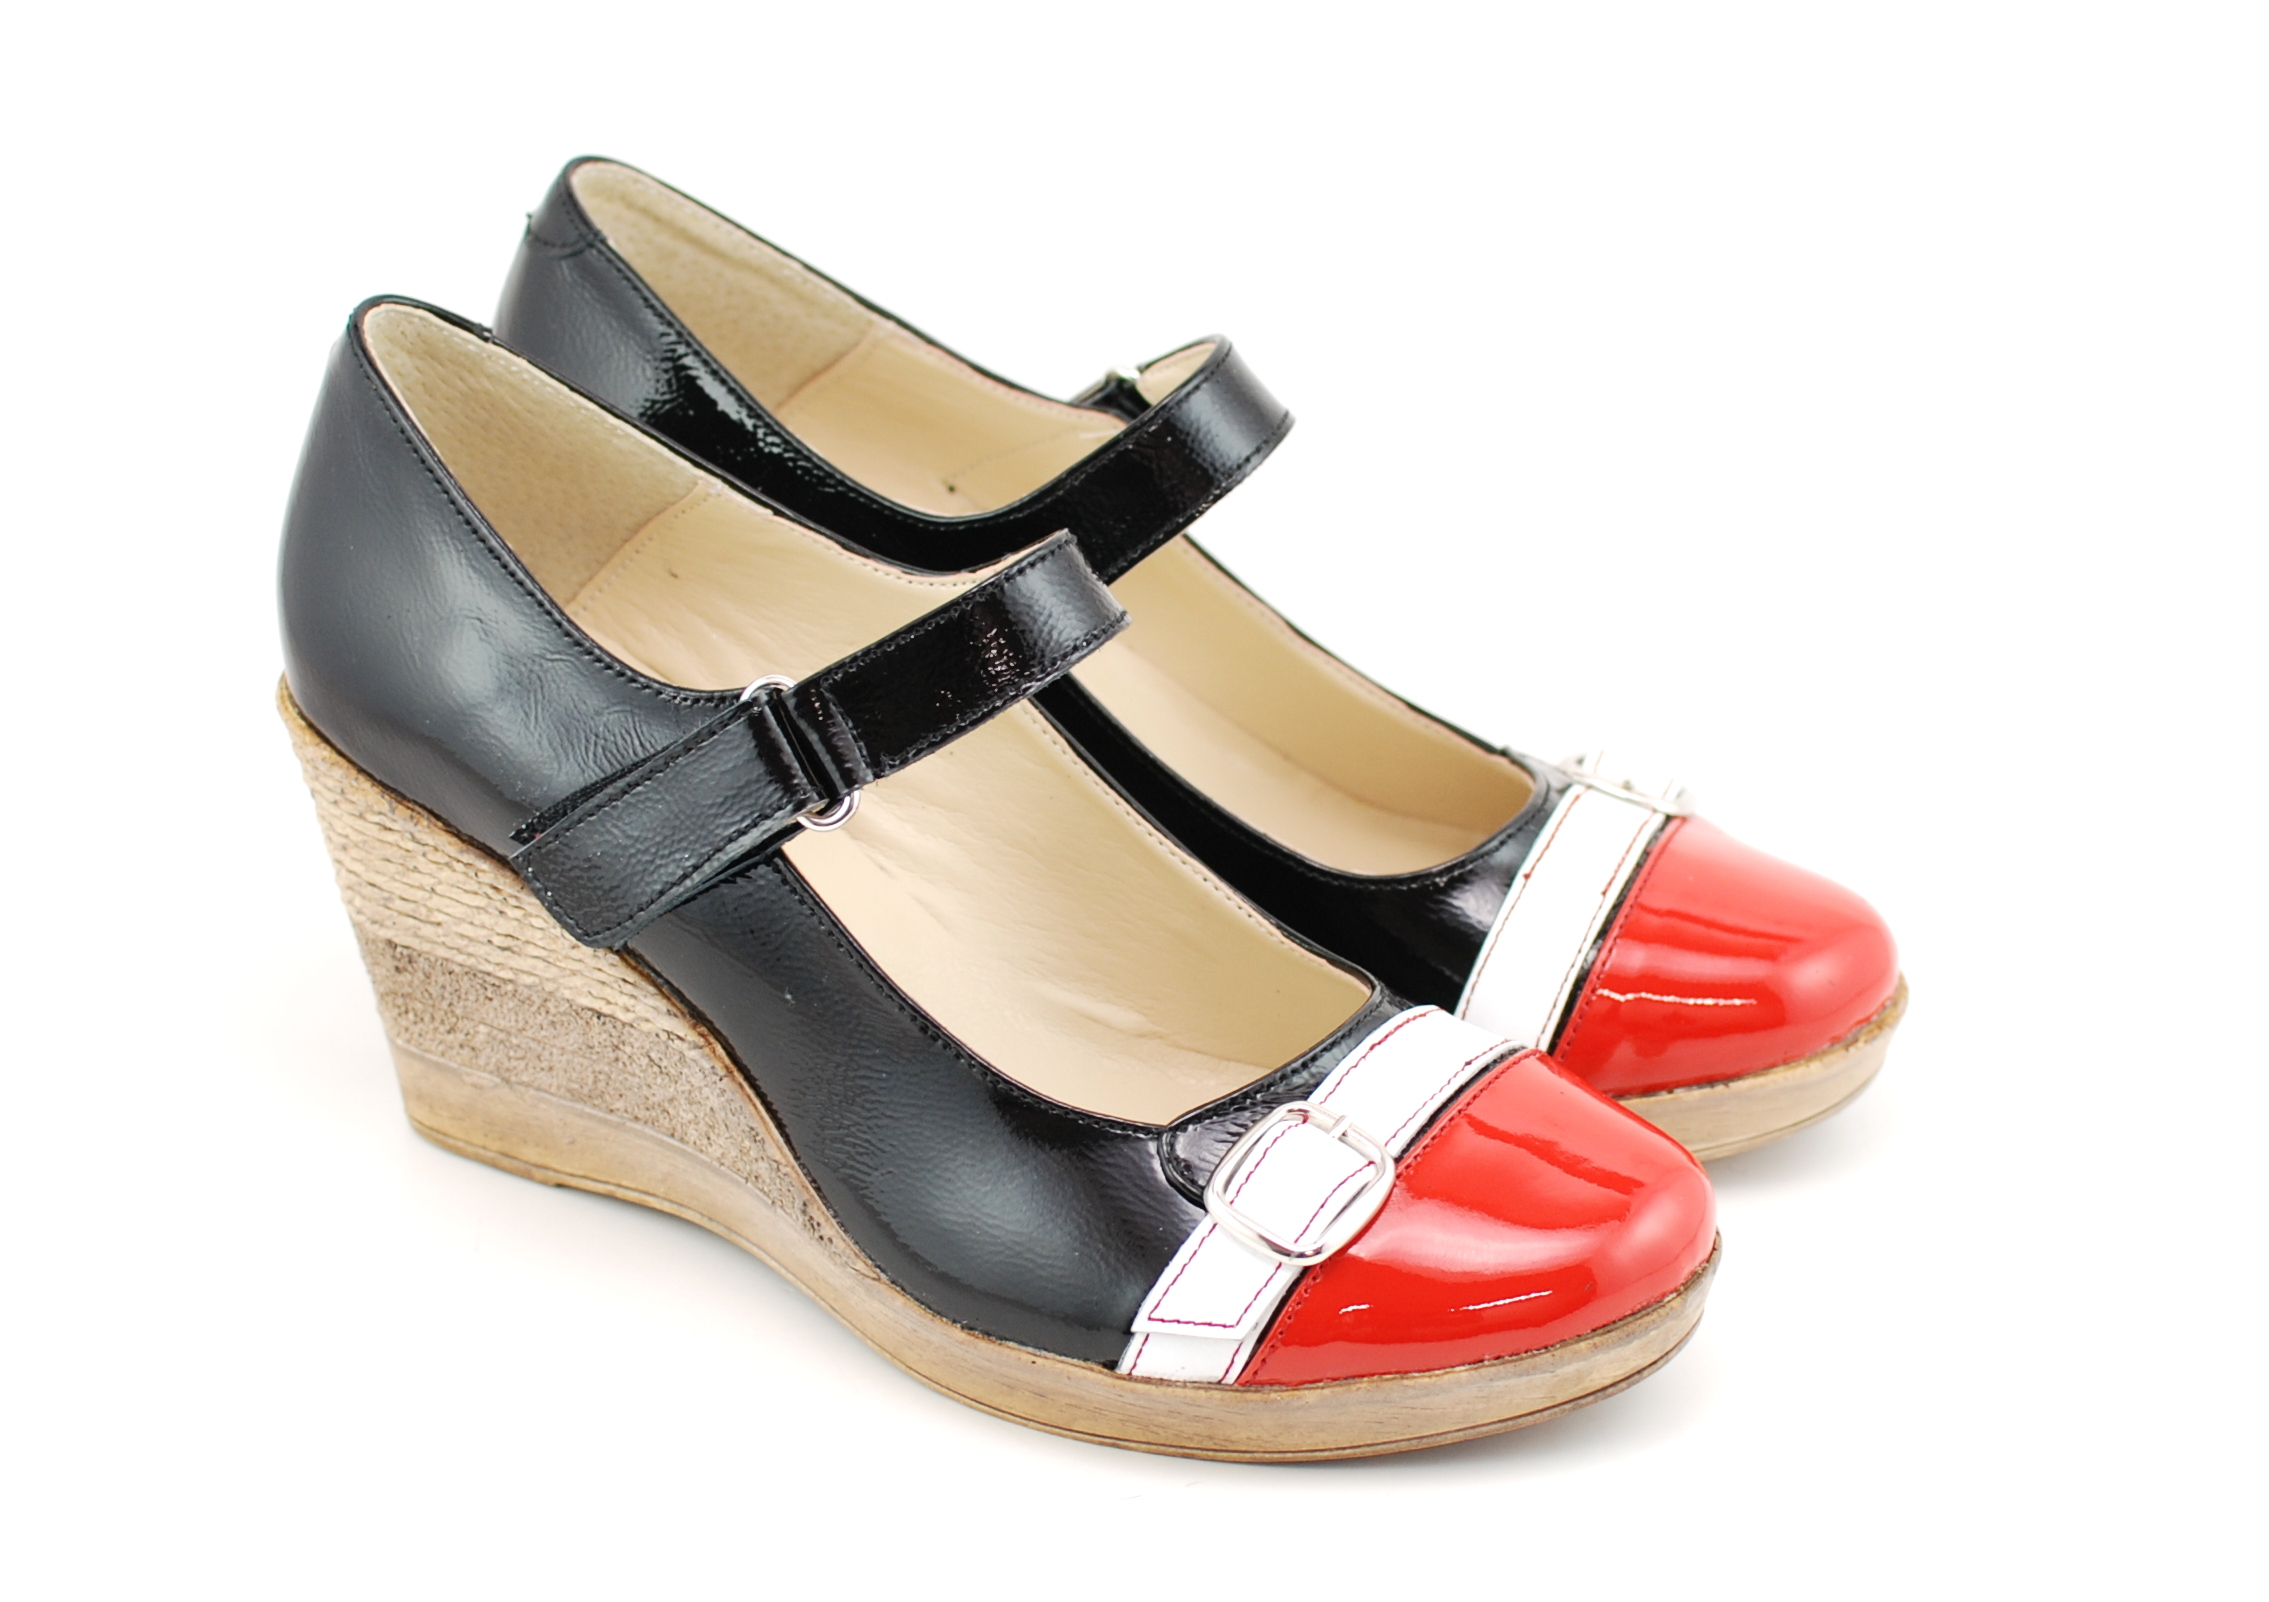 Pantofi dama casual din piele naturala, cu platforme, foarte comozi - PTEARAN2